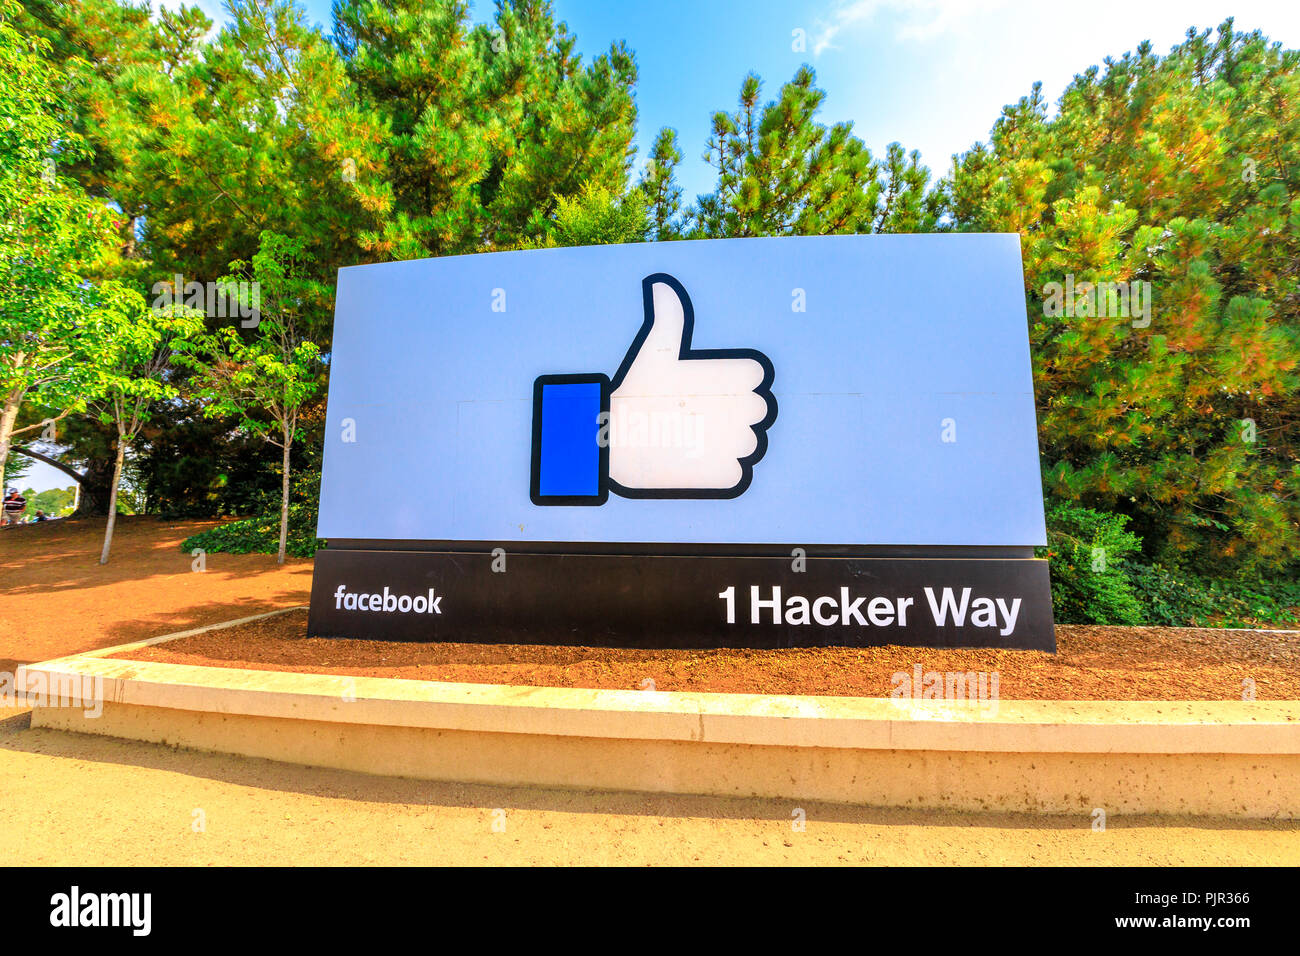 Menlo Park, Kalifornien, USA - 13. August 2018: ein Schild am Eingang der Facebook Hauptsitz, weltweit führender Social Network Unternehmen, 1 Hacker, Silicon Valley. "Gefällt mir"-Schaltfläche Anmelden. Stockfoto